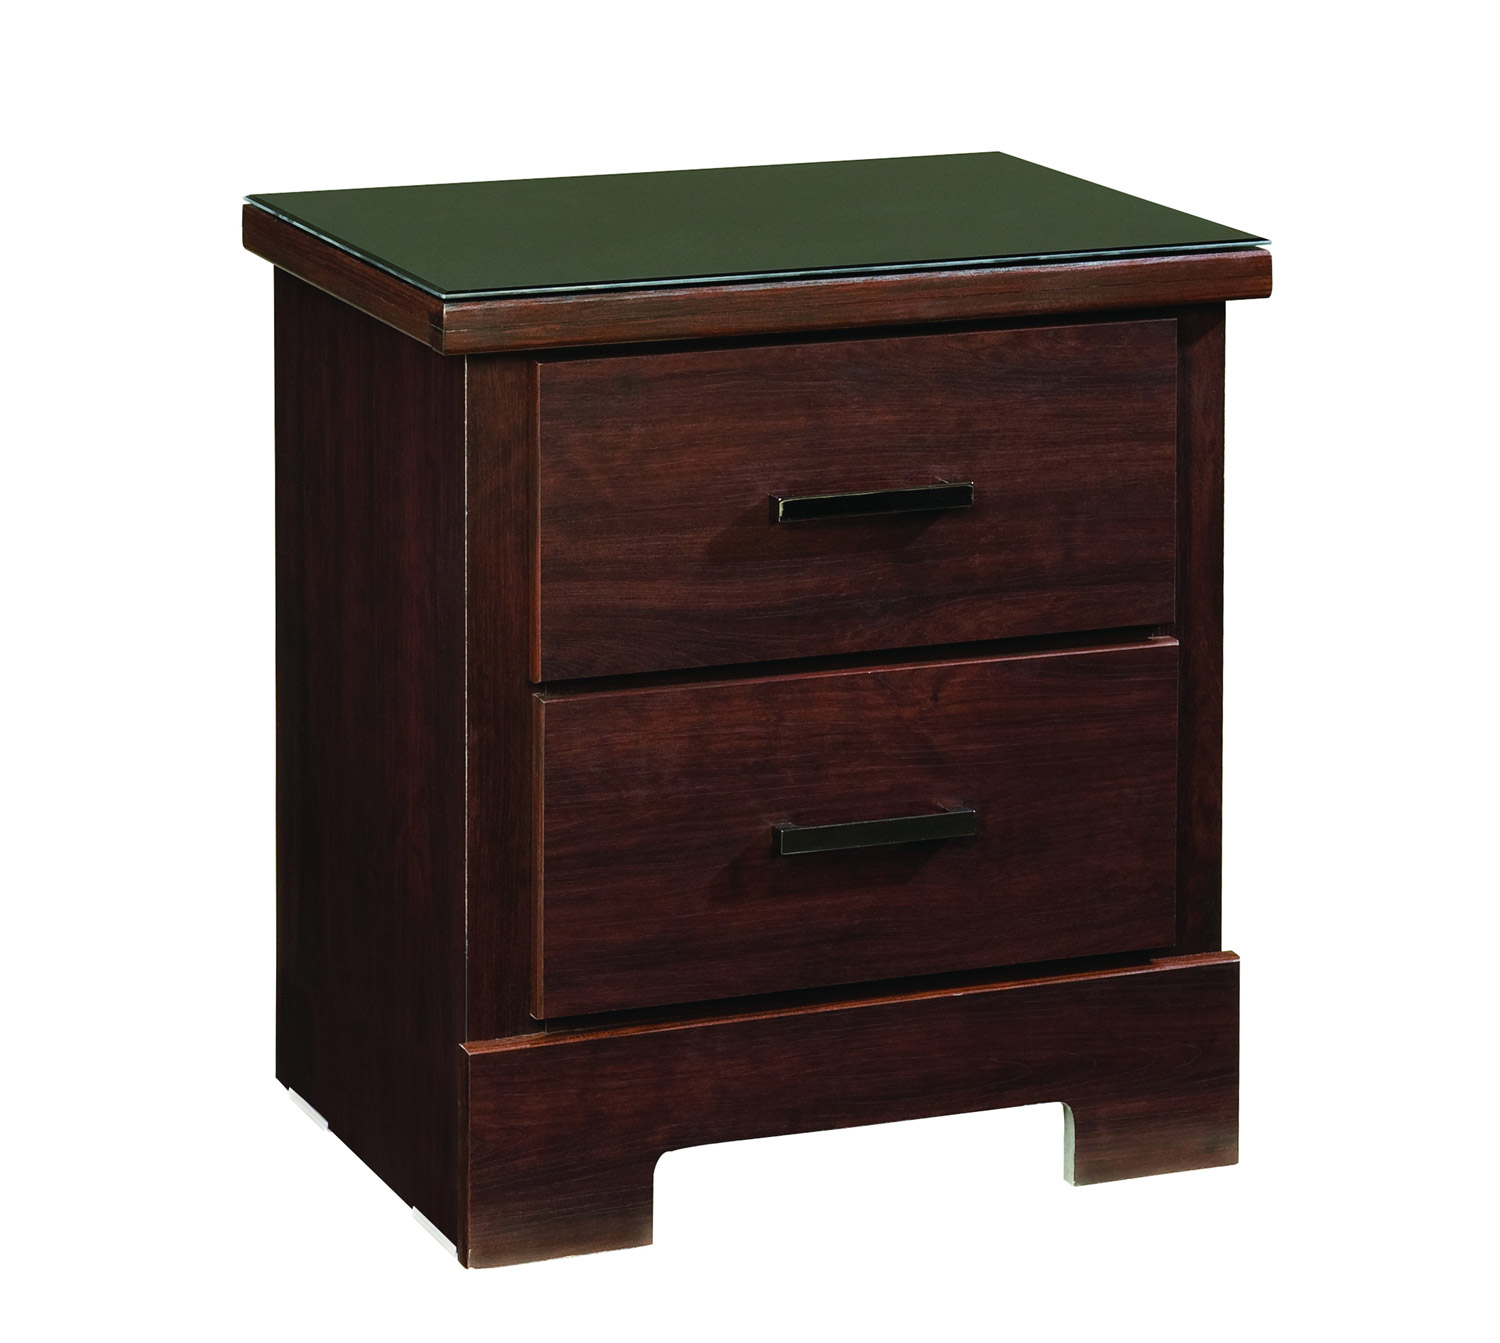 Global Furniture USA Leah Nightstand - Engineered Wood/Paper Veneer - Dark Cherry Merlot